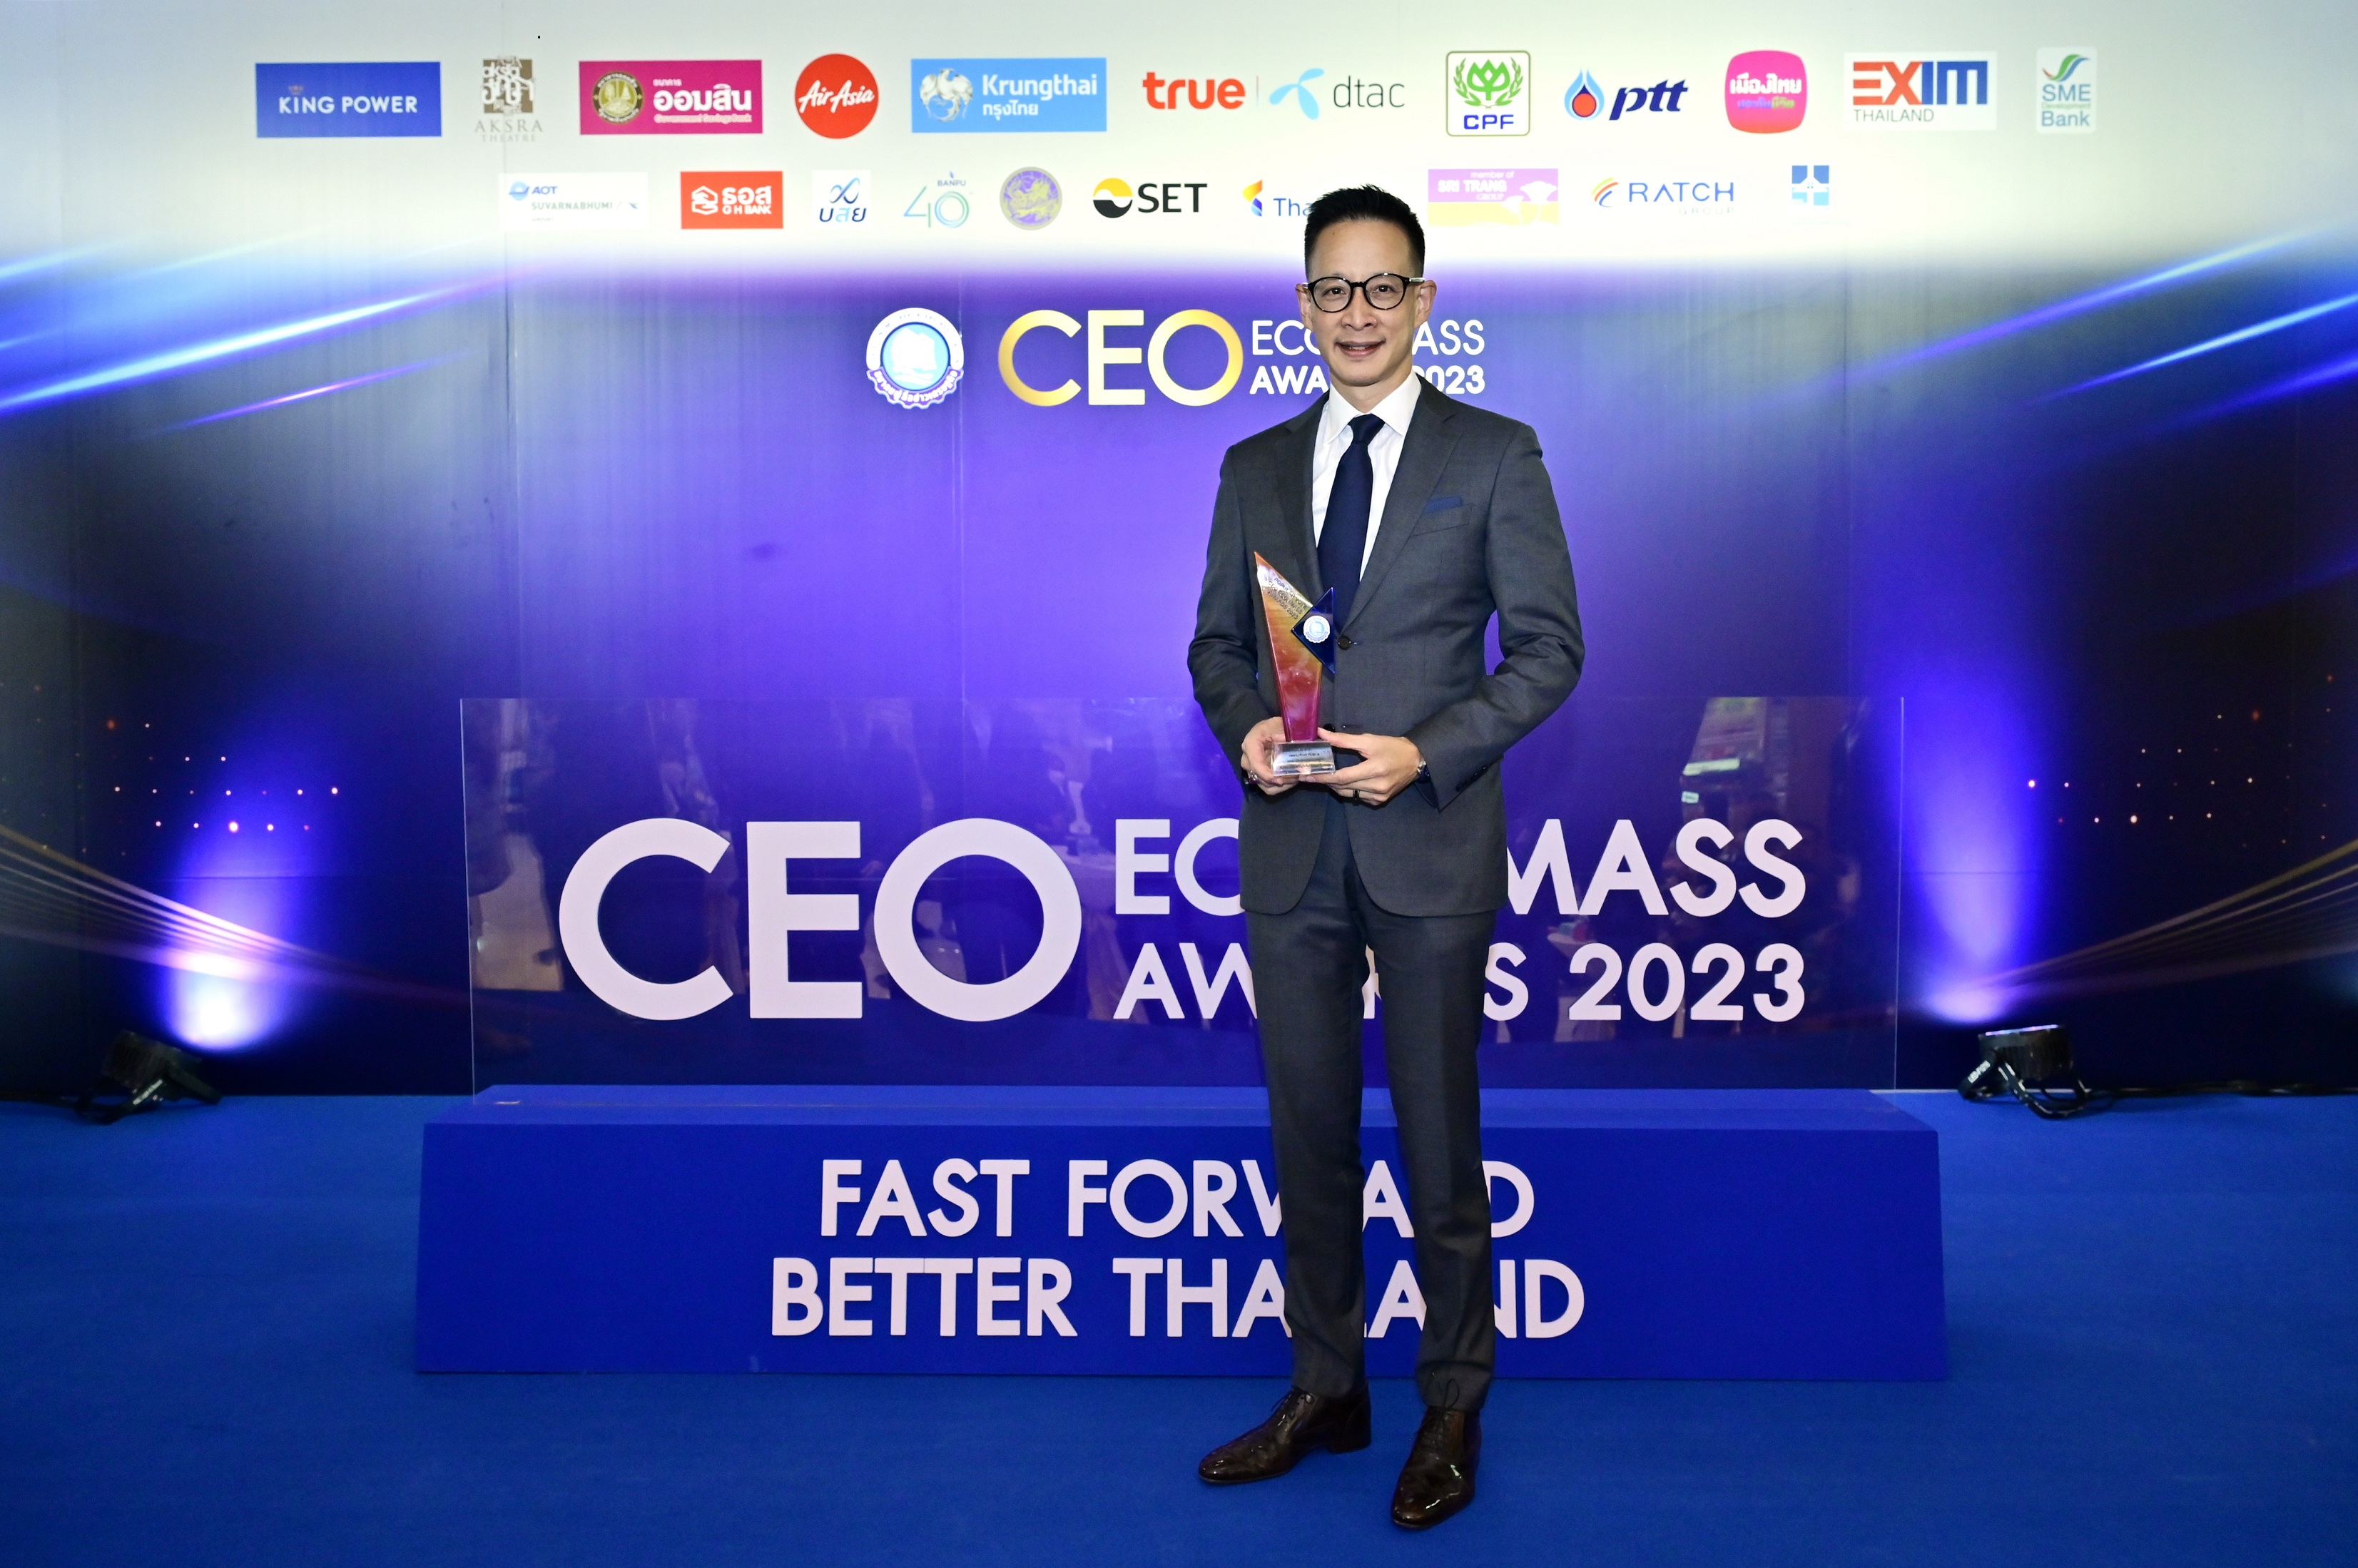 “สาระ ล่ำซำ” คว้ารางวัลเกียรติยศ “สุดยอดซีอีโอขวัญใจสื่อมวลชน” ประจำปี 2566 จากงานประกาศรางวัล Thailand CEO ECONMASS Awards 2023